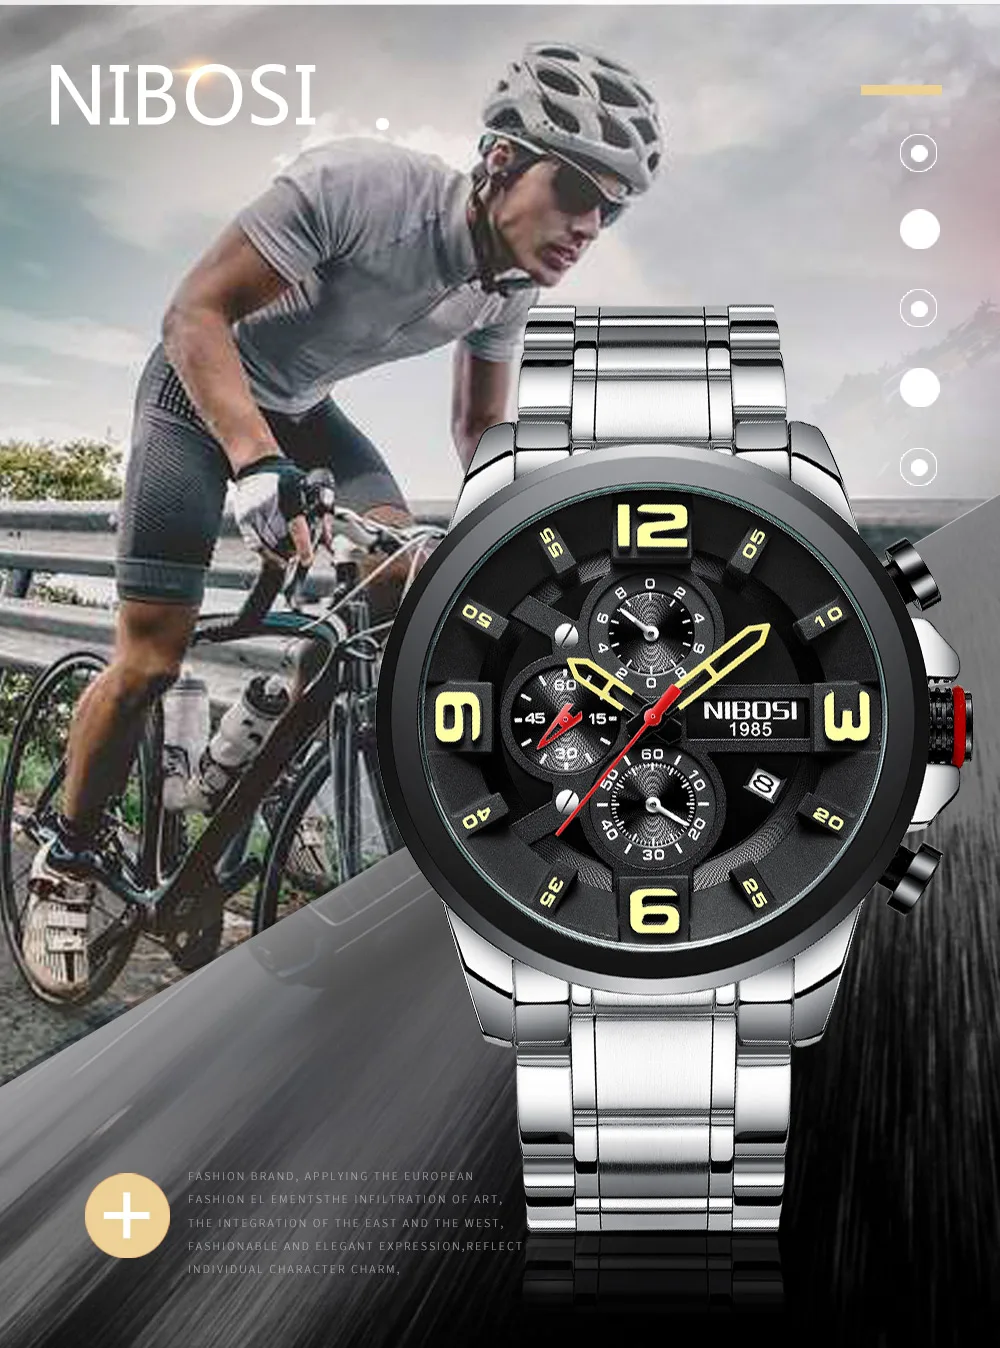 NIBOSI Reloj Hombre мужские часы Топ бренд Роскошные спортивные часы для мужчин часы люксовый бренд водонепроницаемые полностью стальные